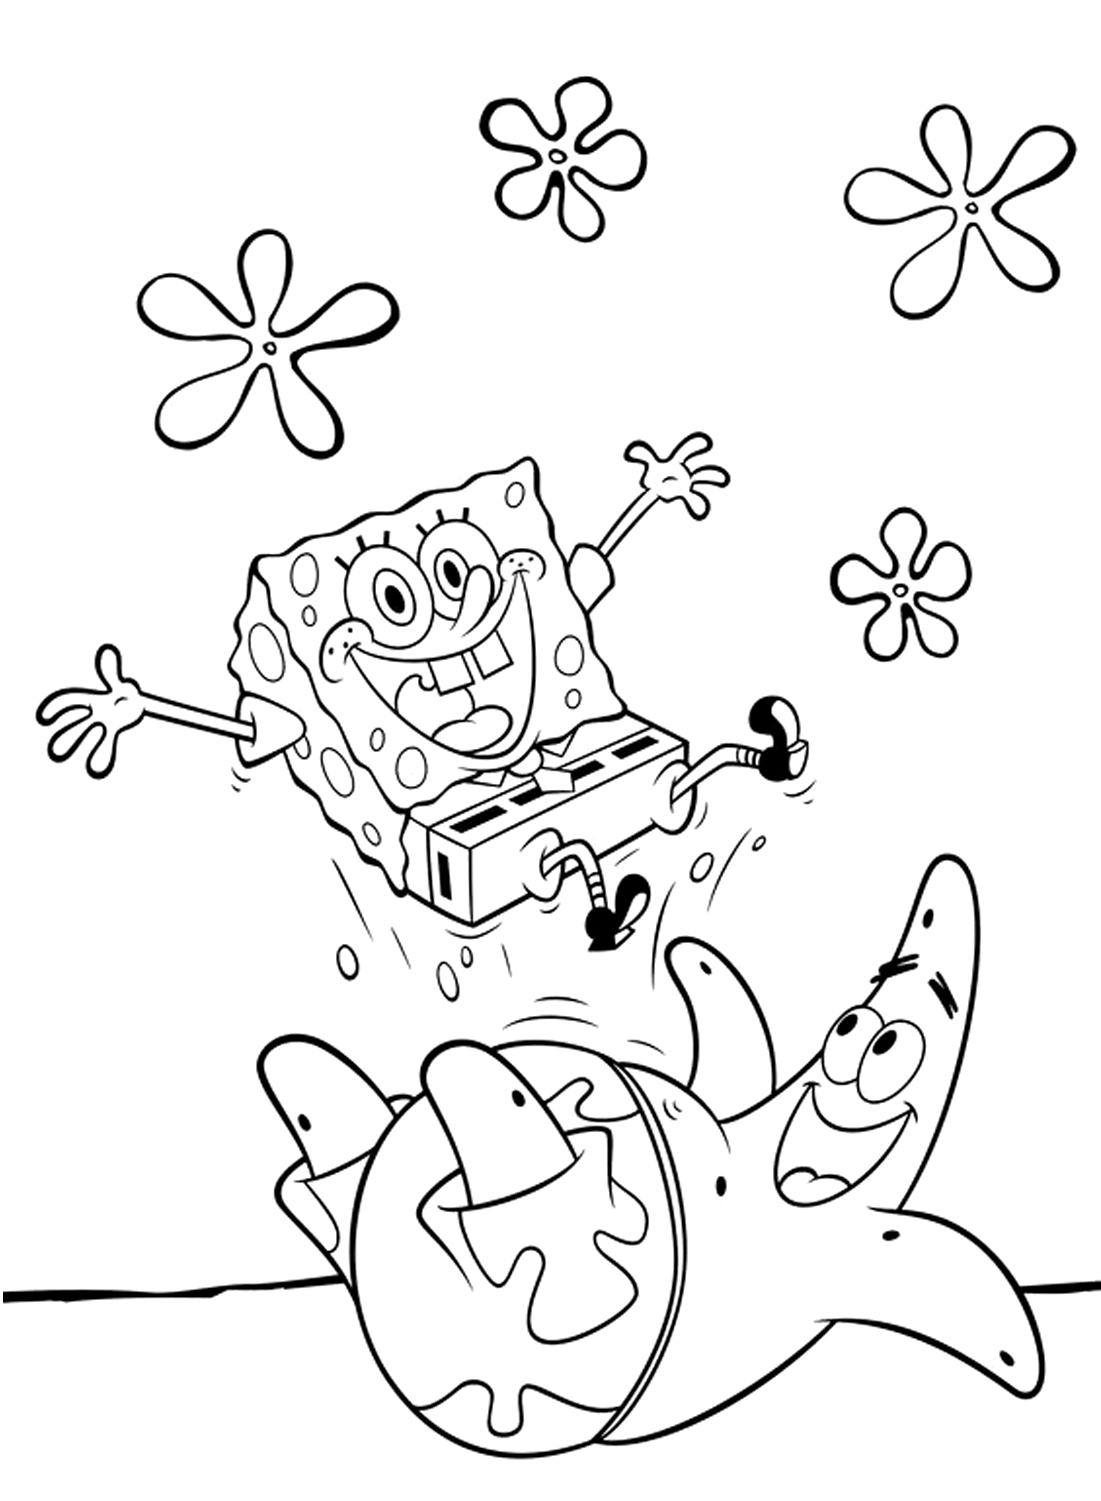 Vrolijke Spongebob Squarepants kleurplaat van Spongebob